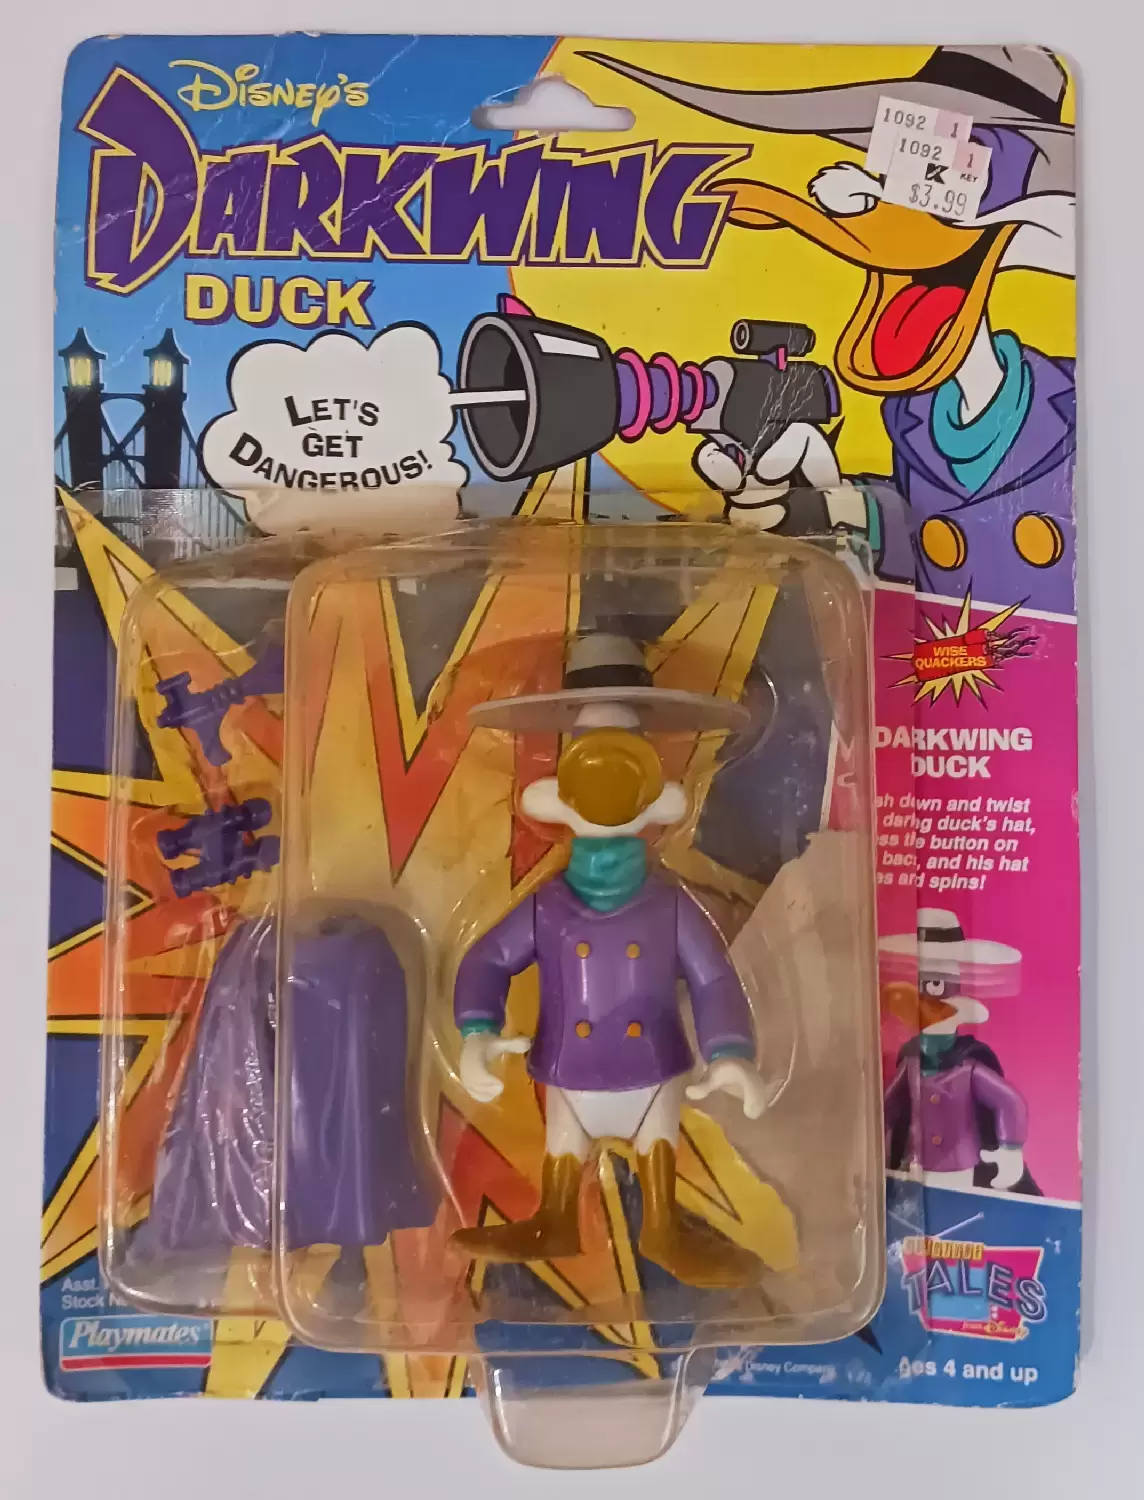 Darkwing Duck - Darkwing Duck